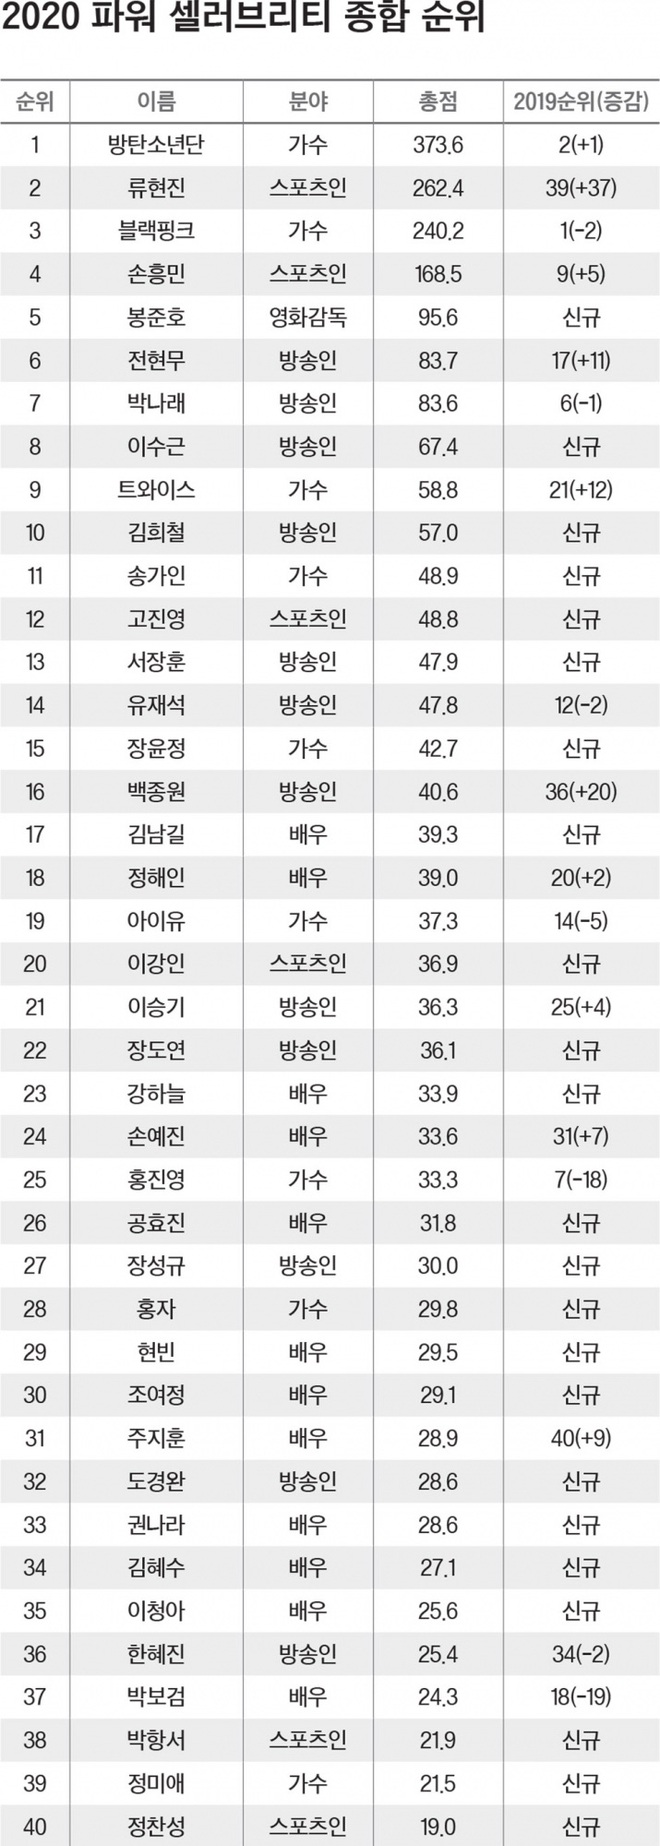 Forbes công bố 40 người nổi tiếng quyền lực nhất Hàn Quốc 2020: BTS - BLACKPINK đổi ngôi, diễn viên, MC lấn át idol với thứ hạng gây sốc - Ảnh 19.